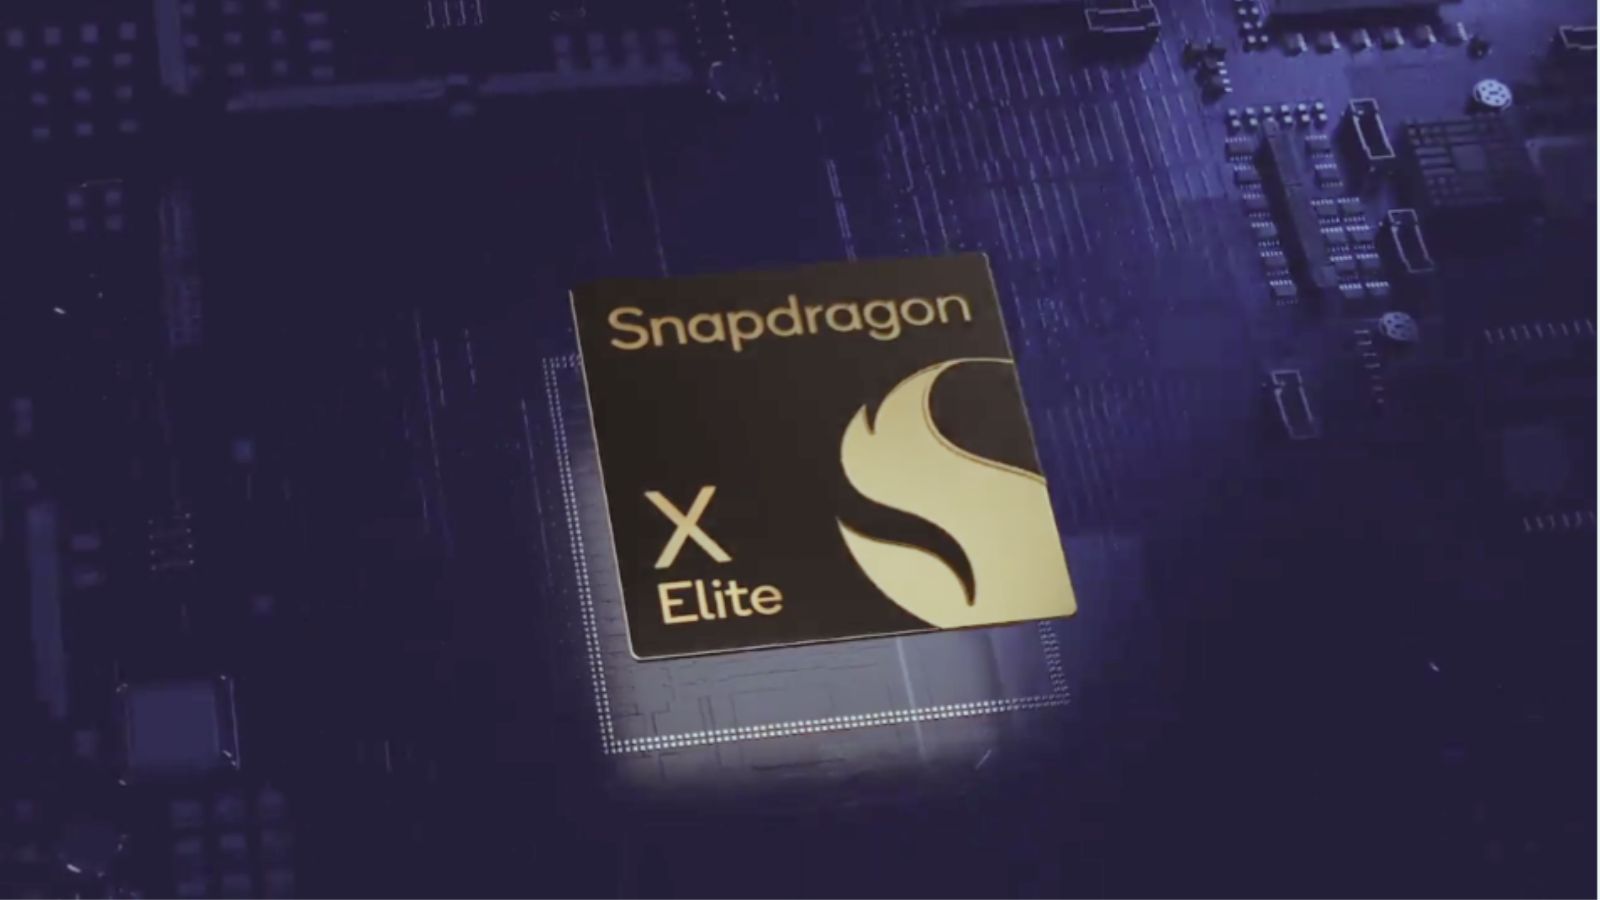 Snapdragon X Elite superiore ad Apple M3? Un benchmark indipendente sembra confermarlo